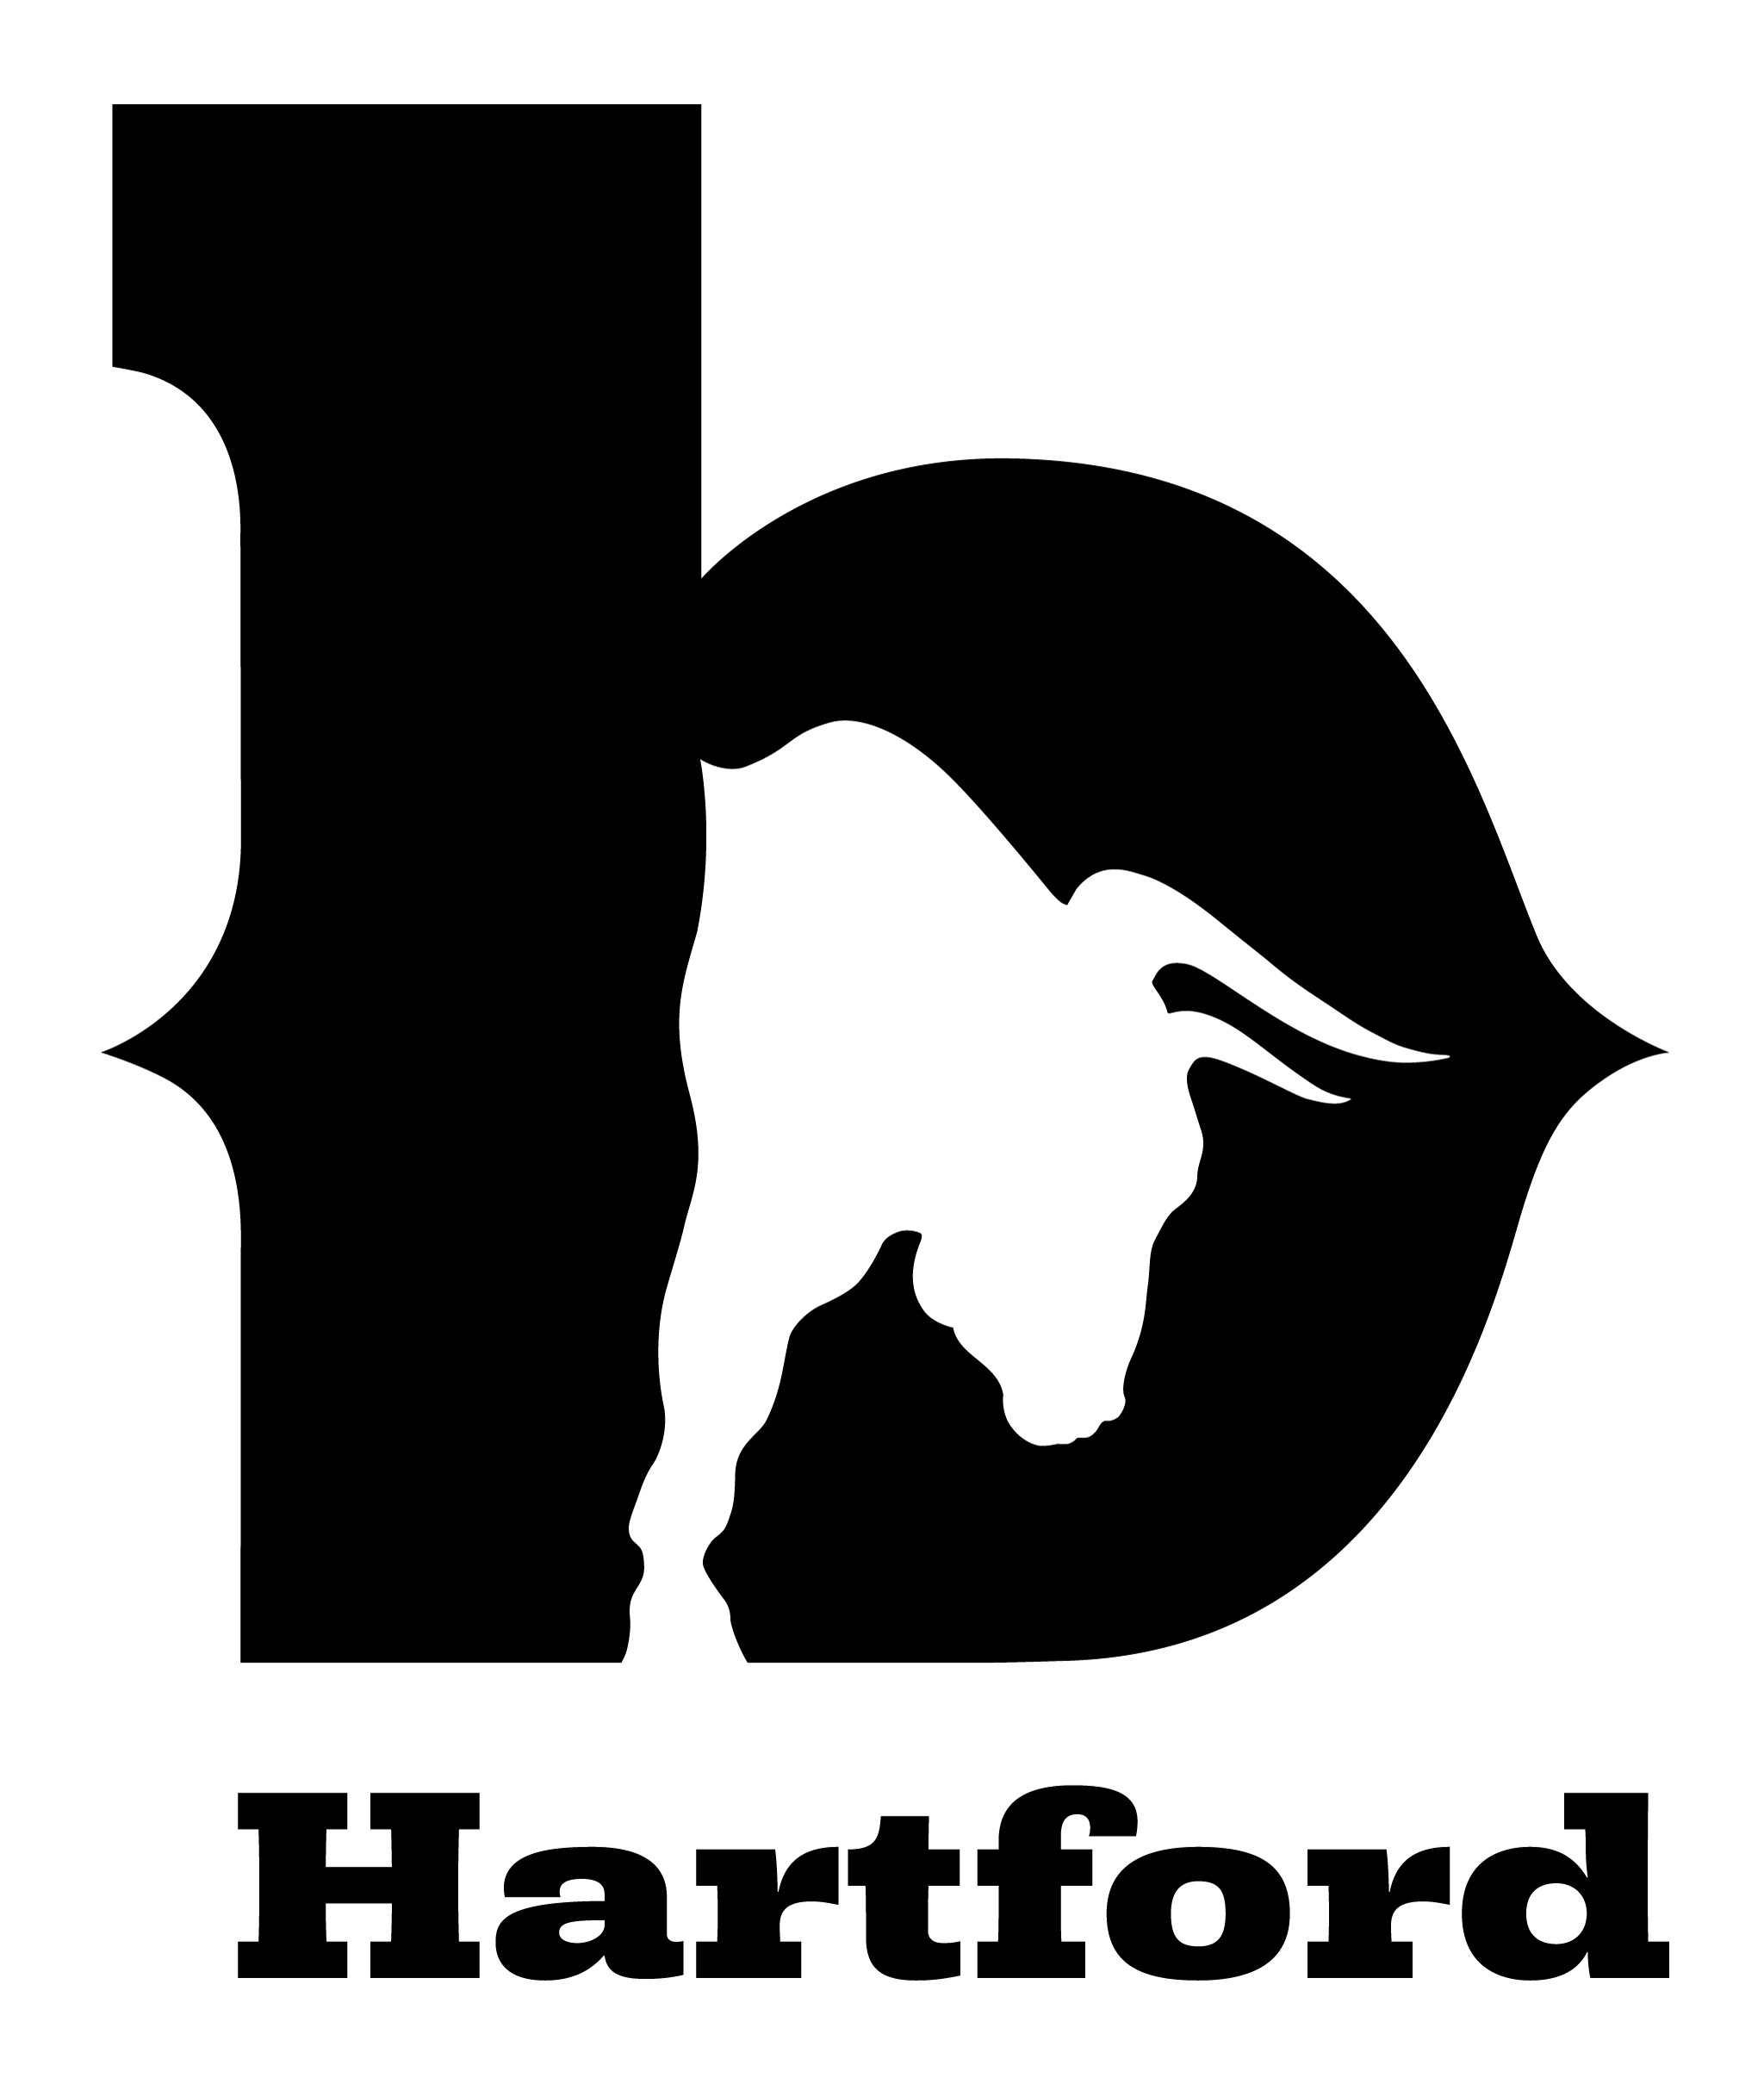 The B Hartford The B Hartford